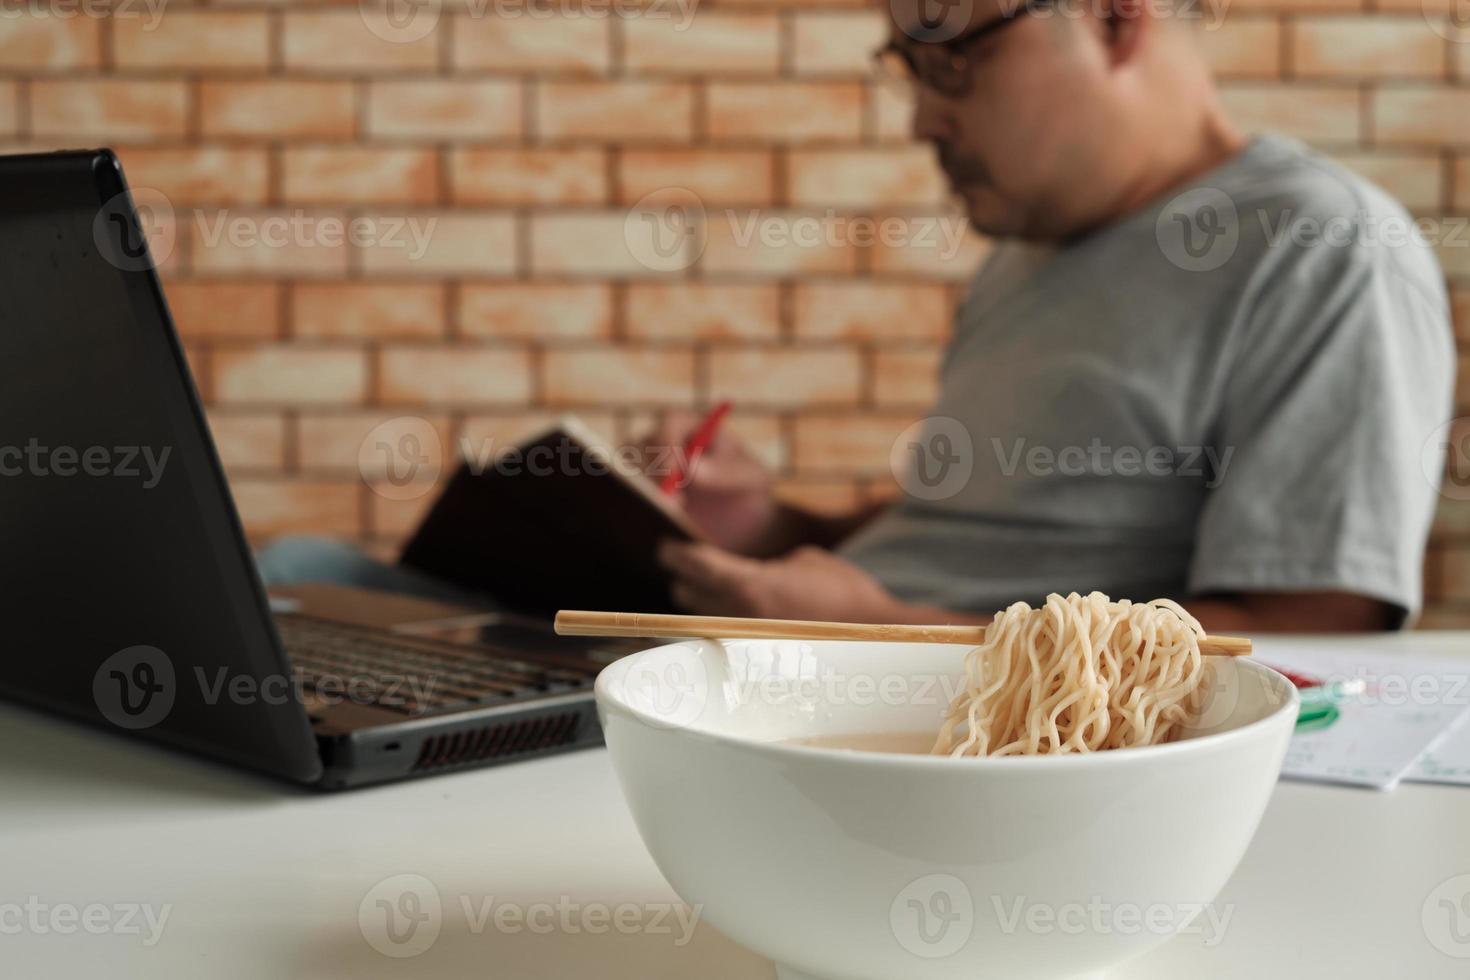 Trabajador tailandés ocupado trabajando con una computadora portátil, use palillos para comer apresuradamente fideos instantáneos durante el almuerzo de la oficina, porque es rápido, sabroso y barato. con el tiempo comida rápida asiática, estilo de vida poco saludable. foto